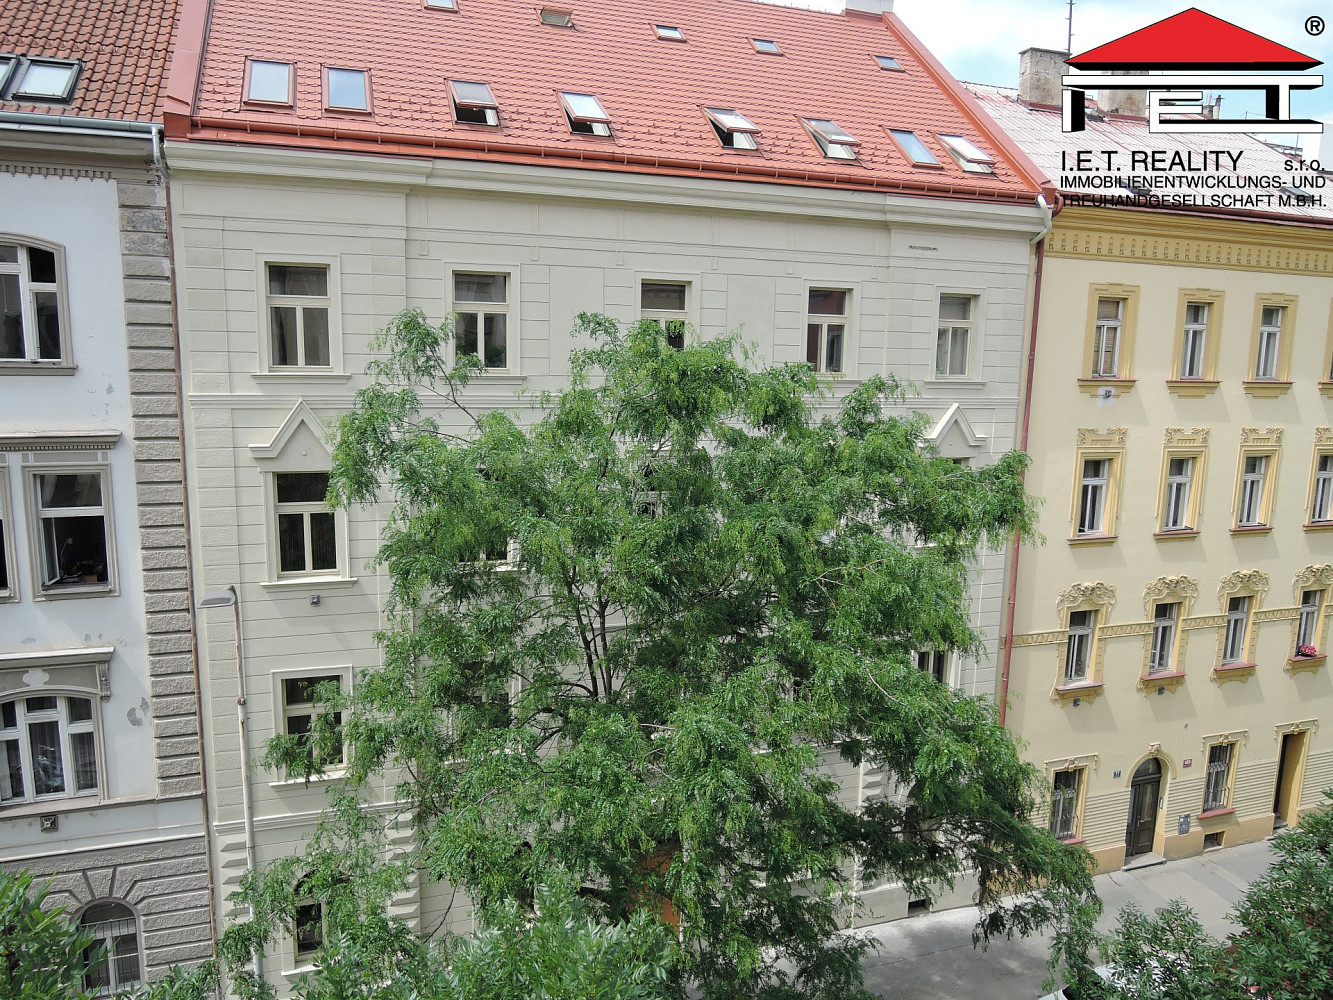 Březinova, Praha 8 - Karlín